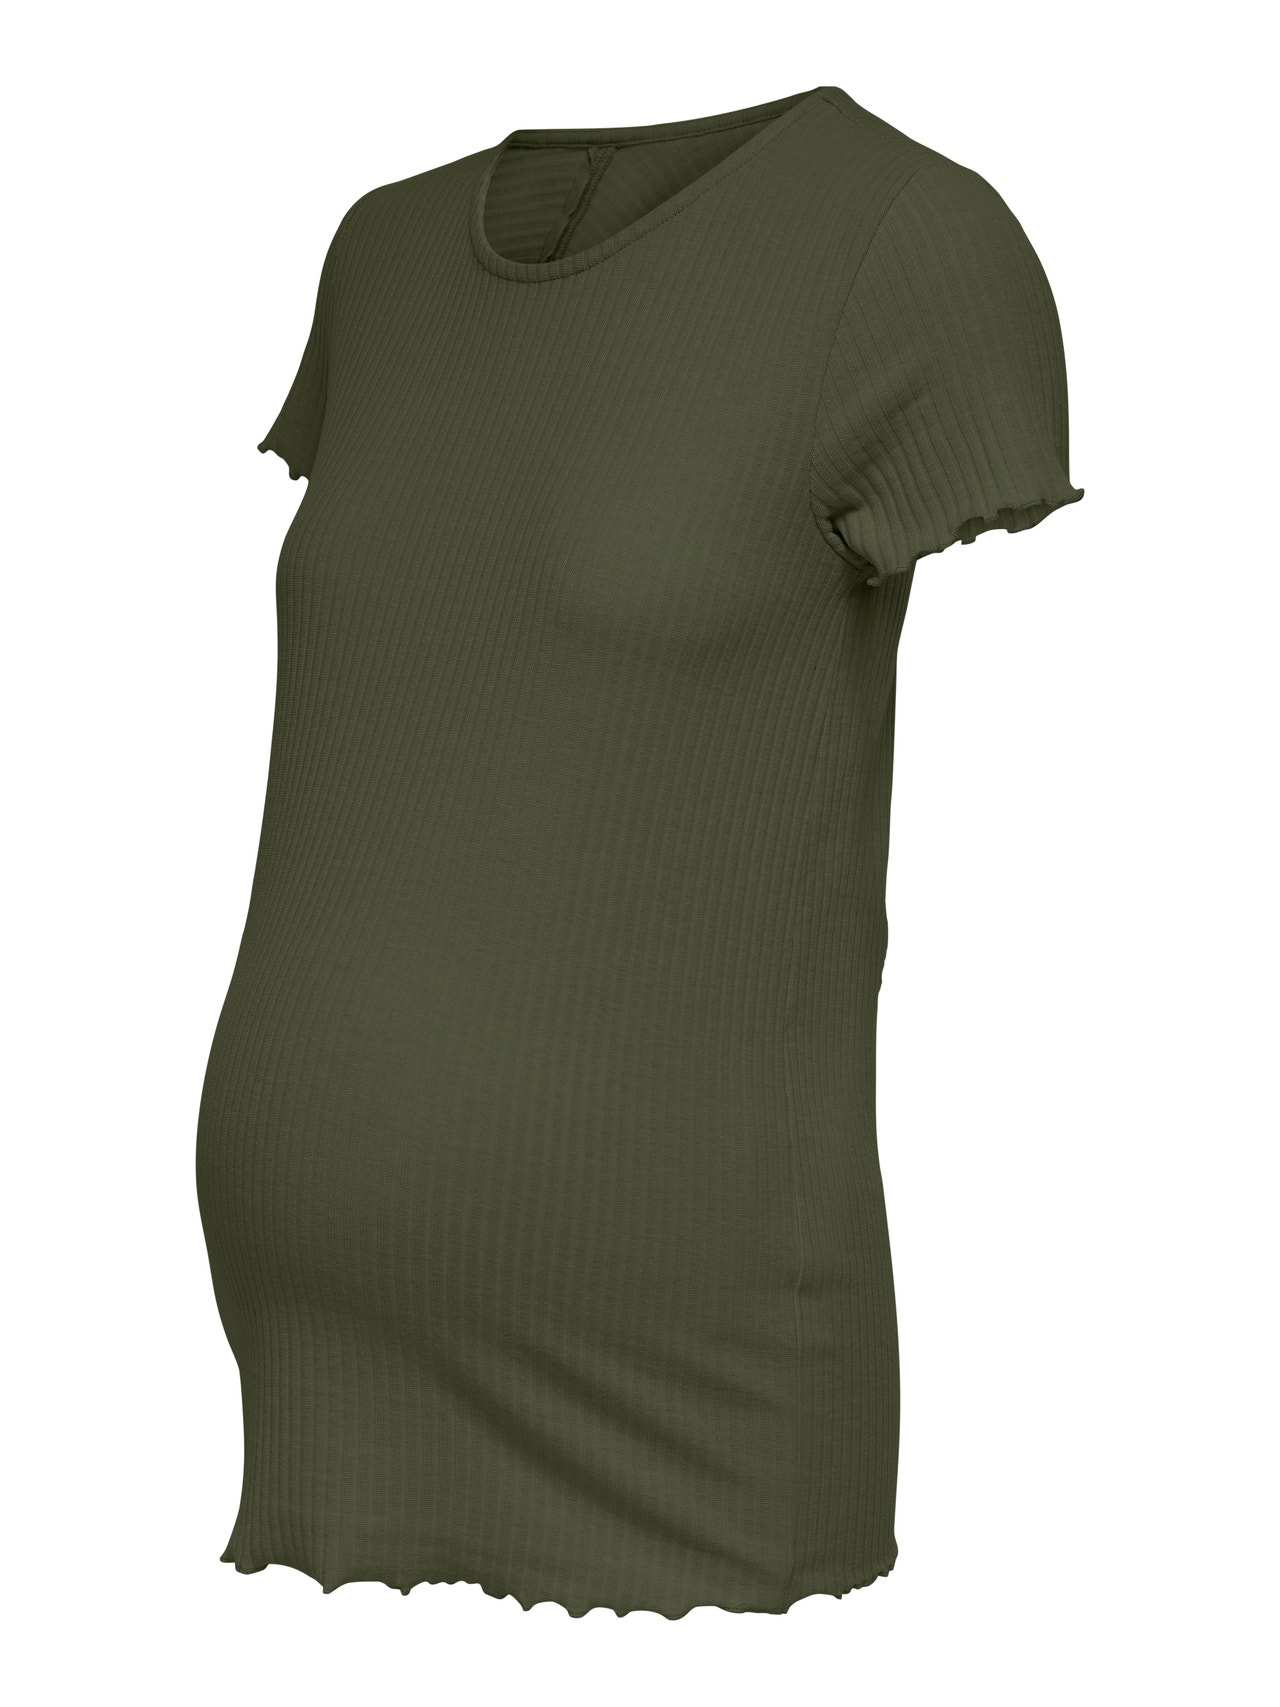 ONLY Mama short sleeved Top -Kalamata - 15242107